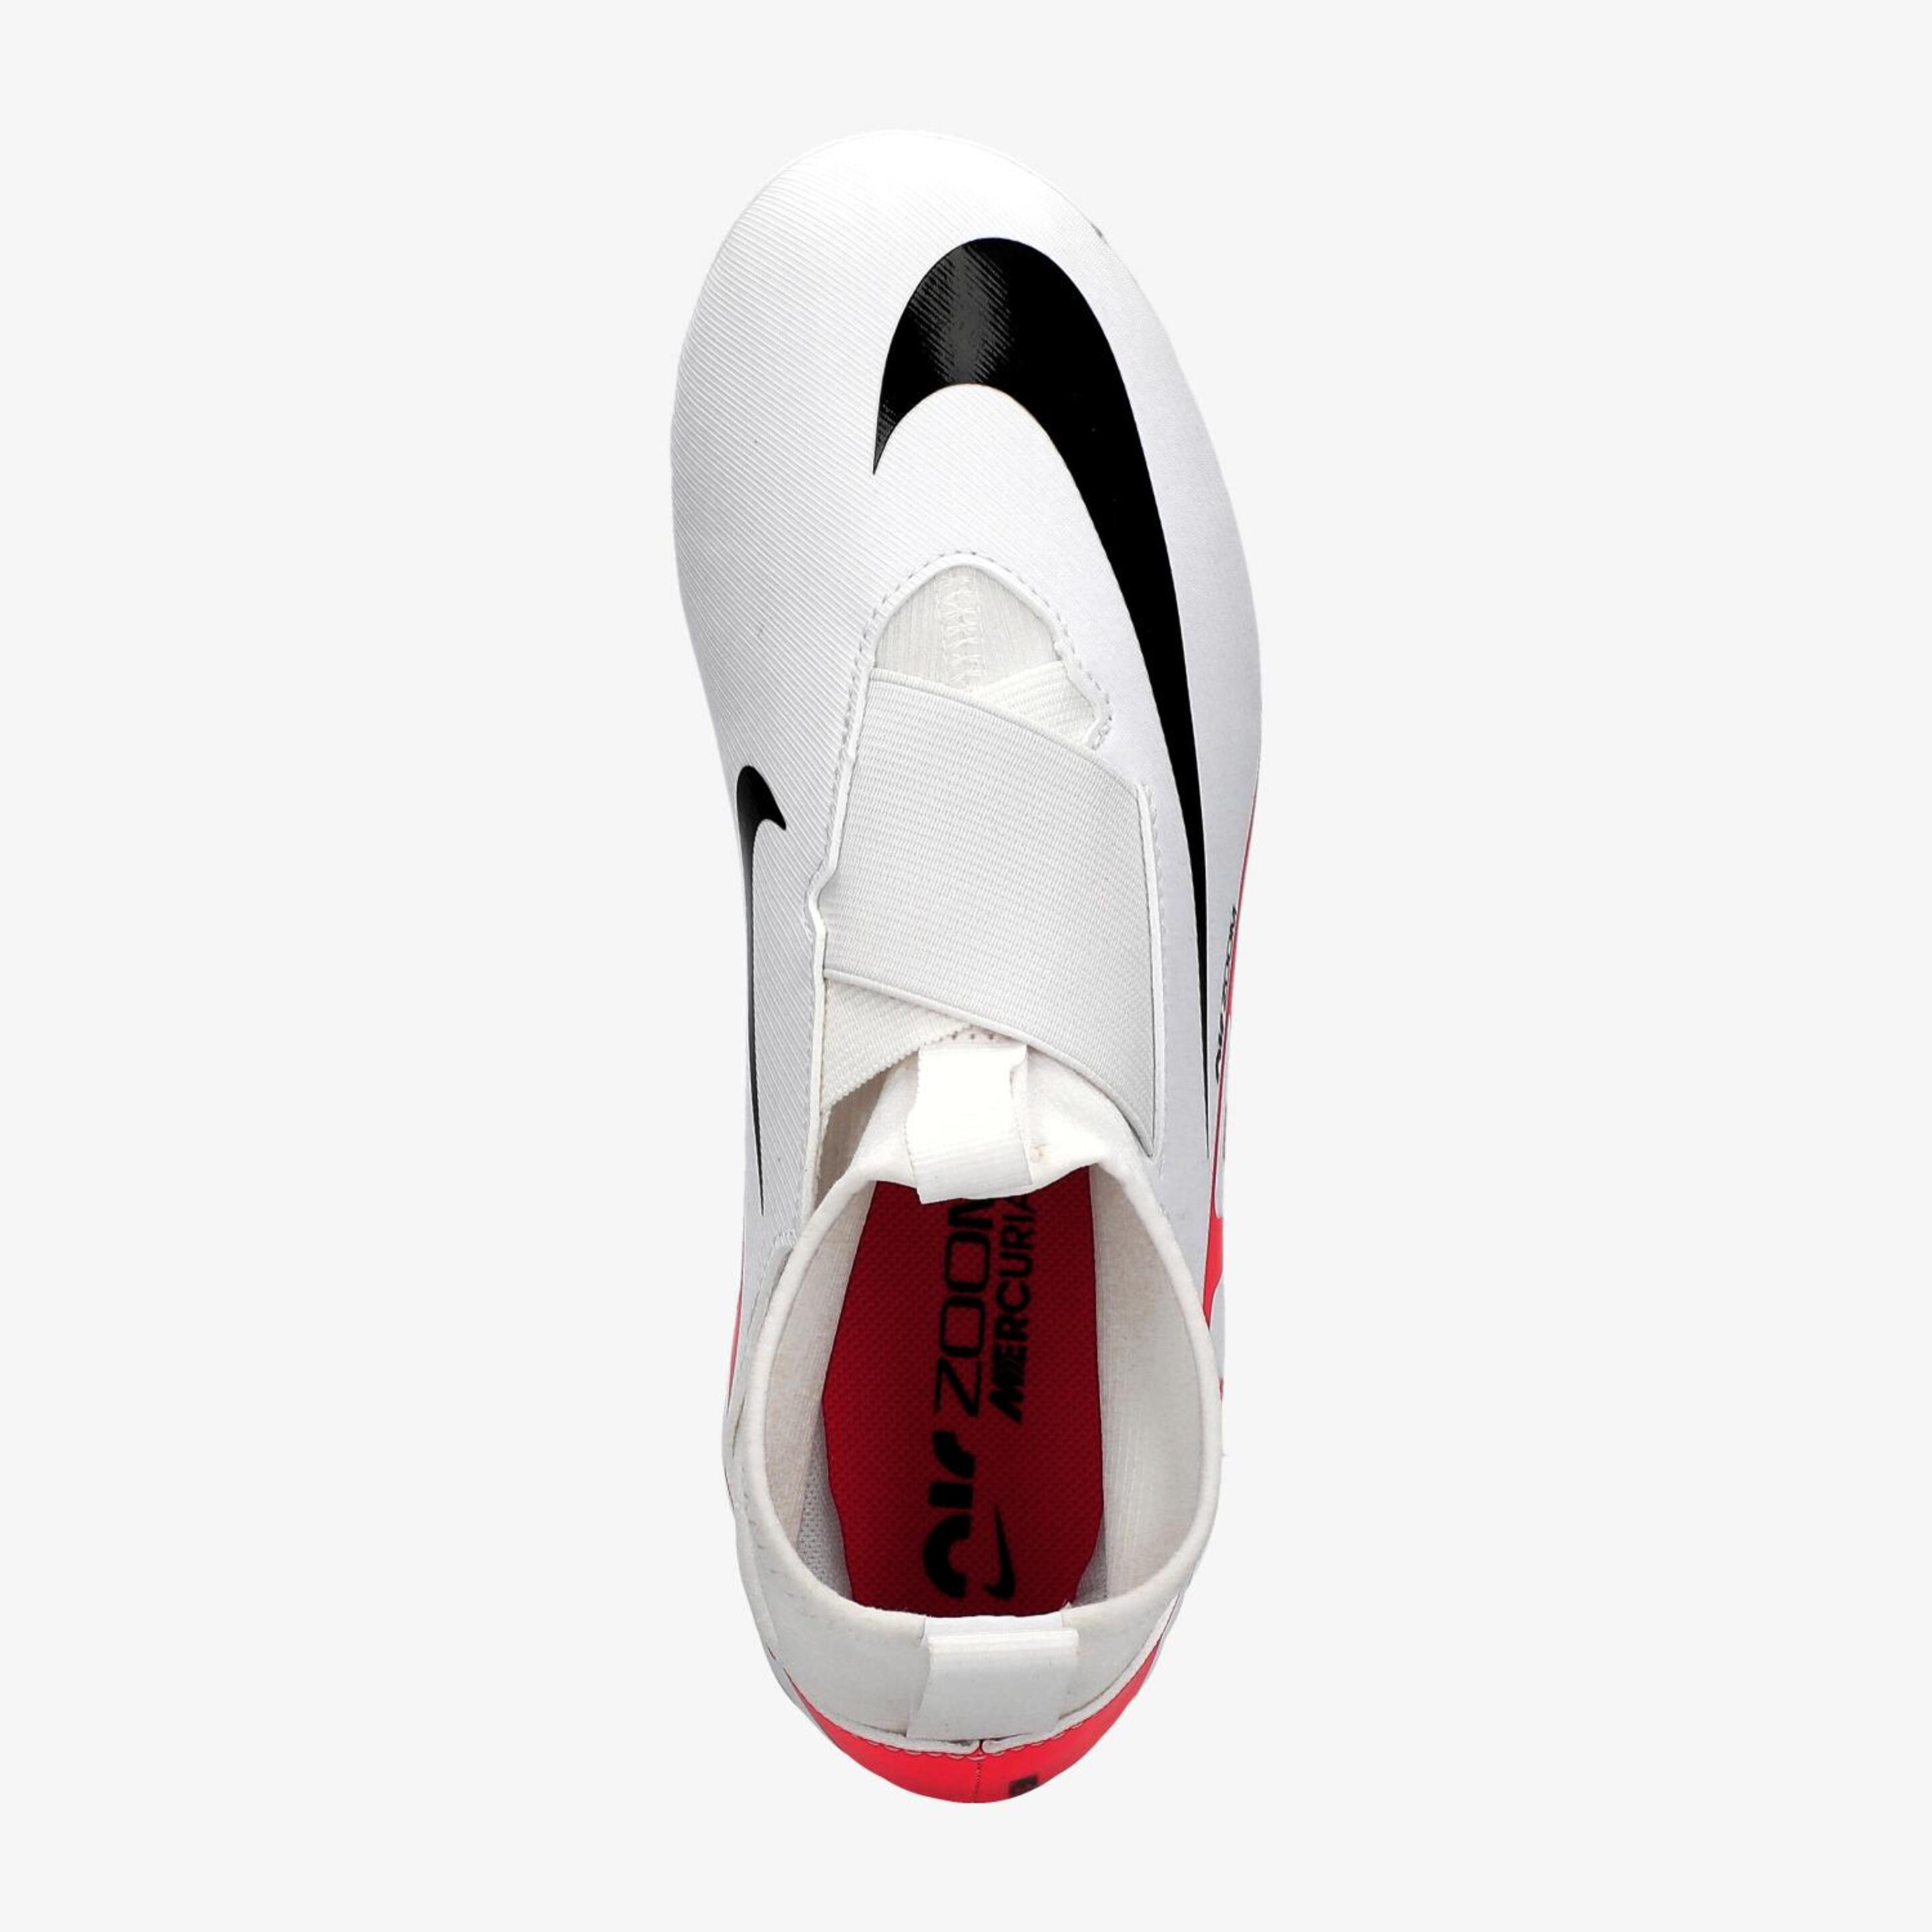 Nike Mercurial Vapor MG - Blanco - Botas Fútbol Niño